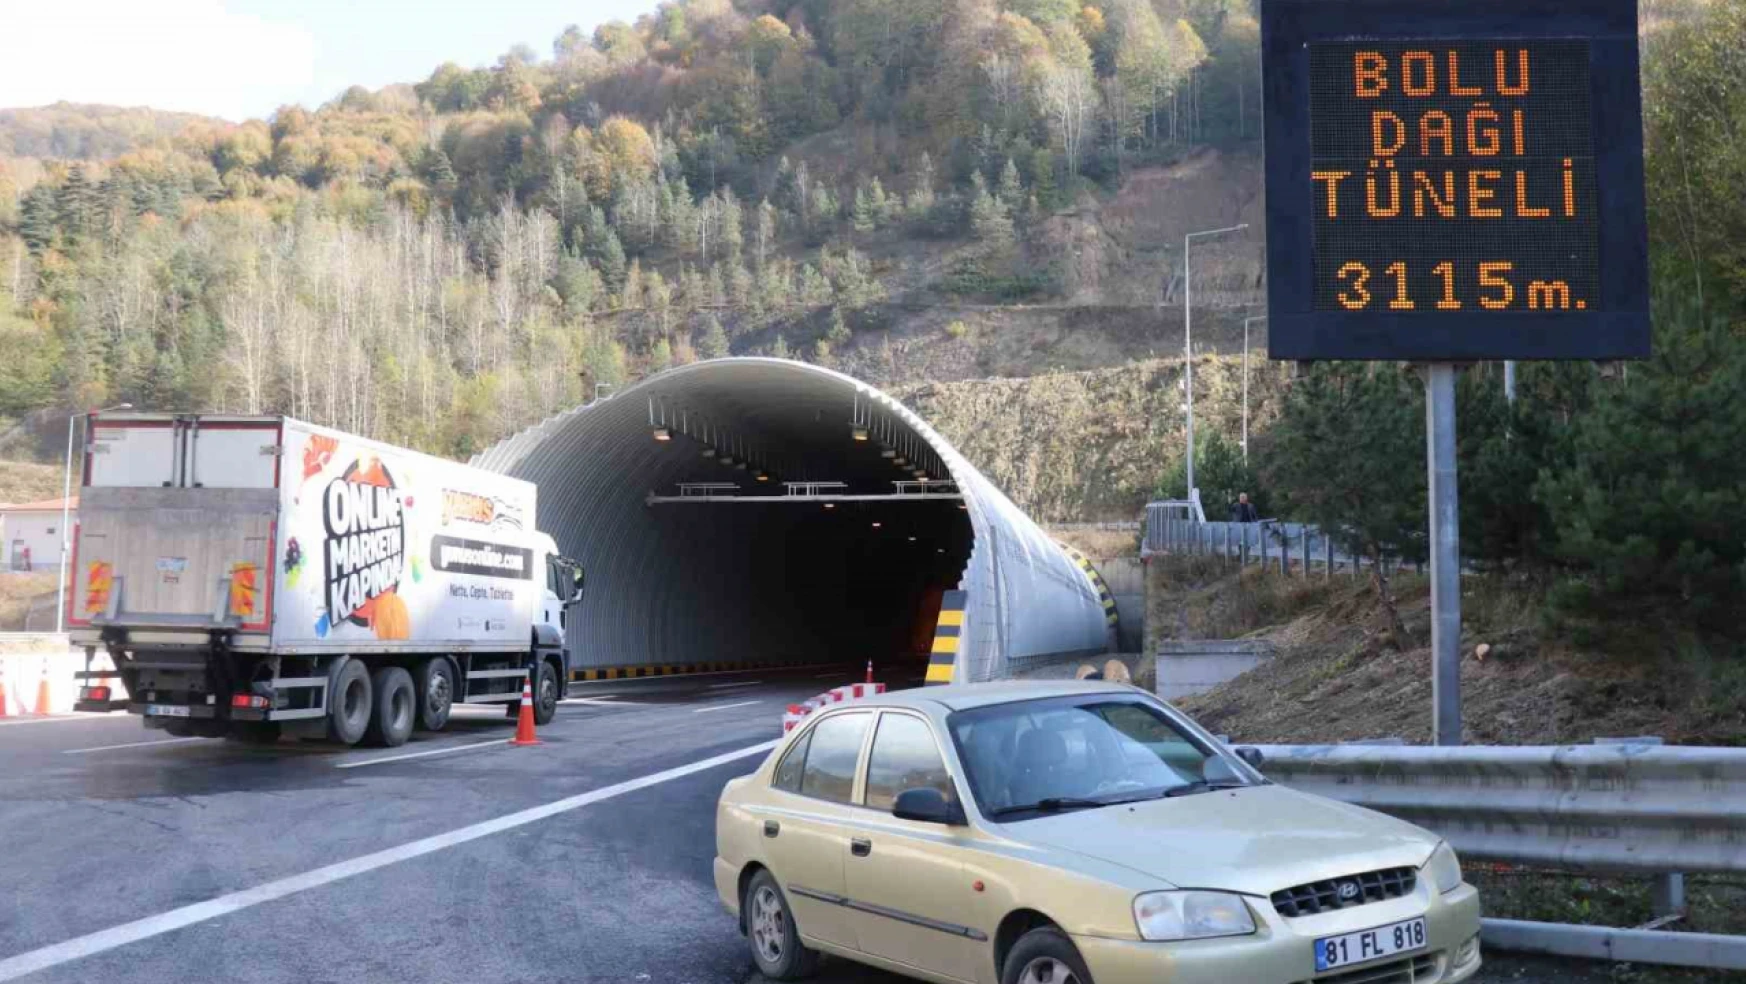 Bolu Dağı Tüneli'nden araçlar geçmeye başladı